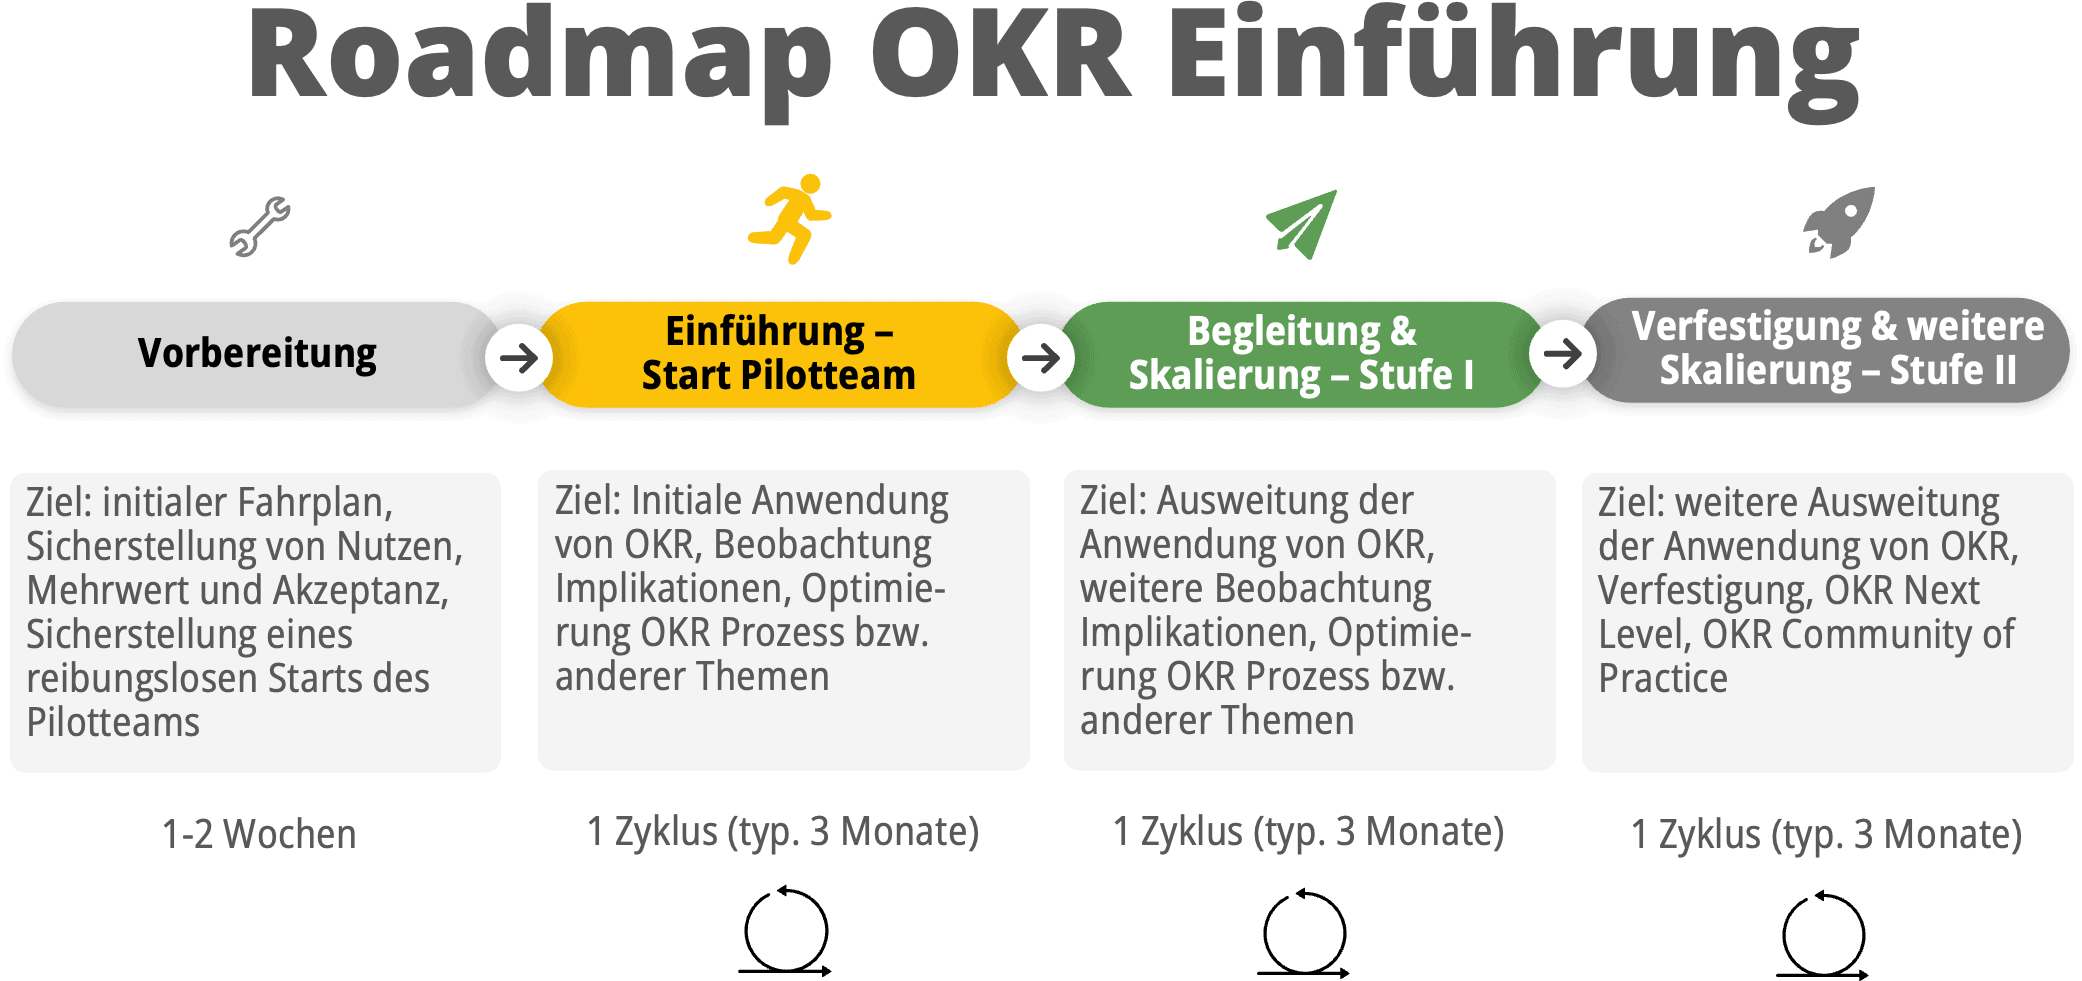 OKR Einführung Roadmap